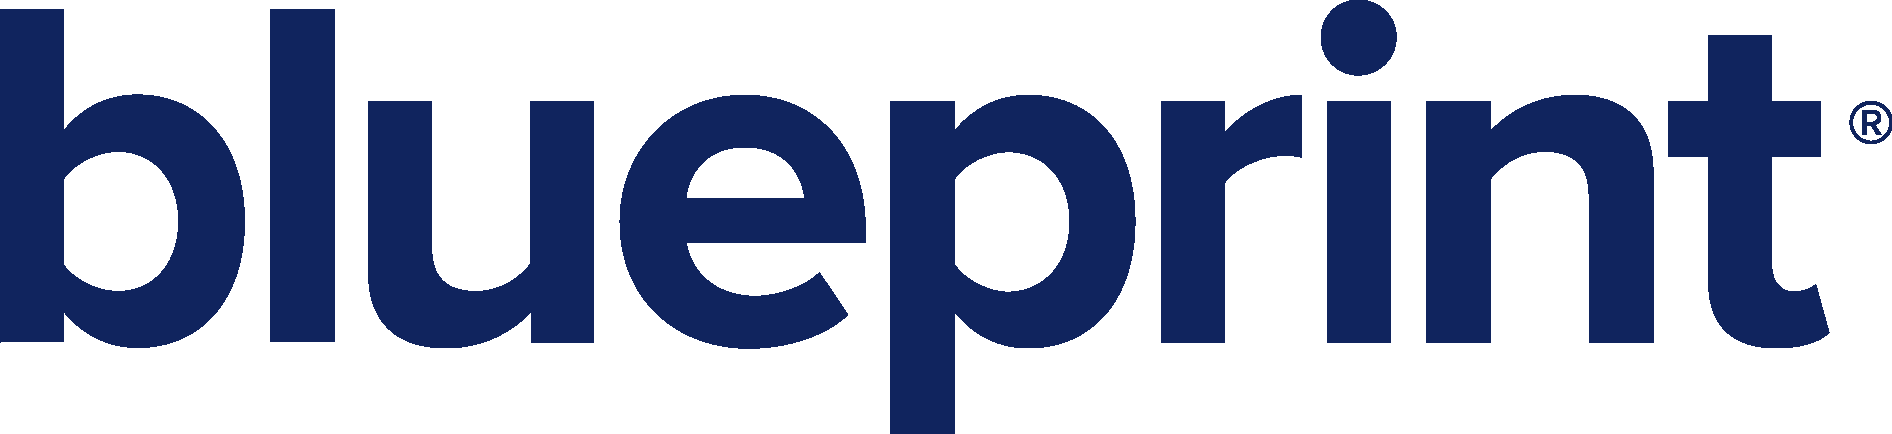 Blueprint Logo Download Vector